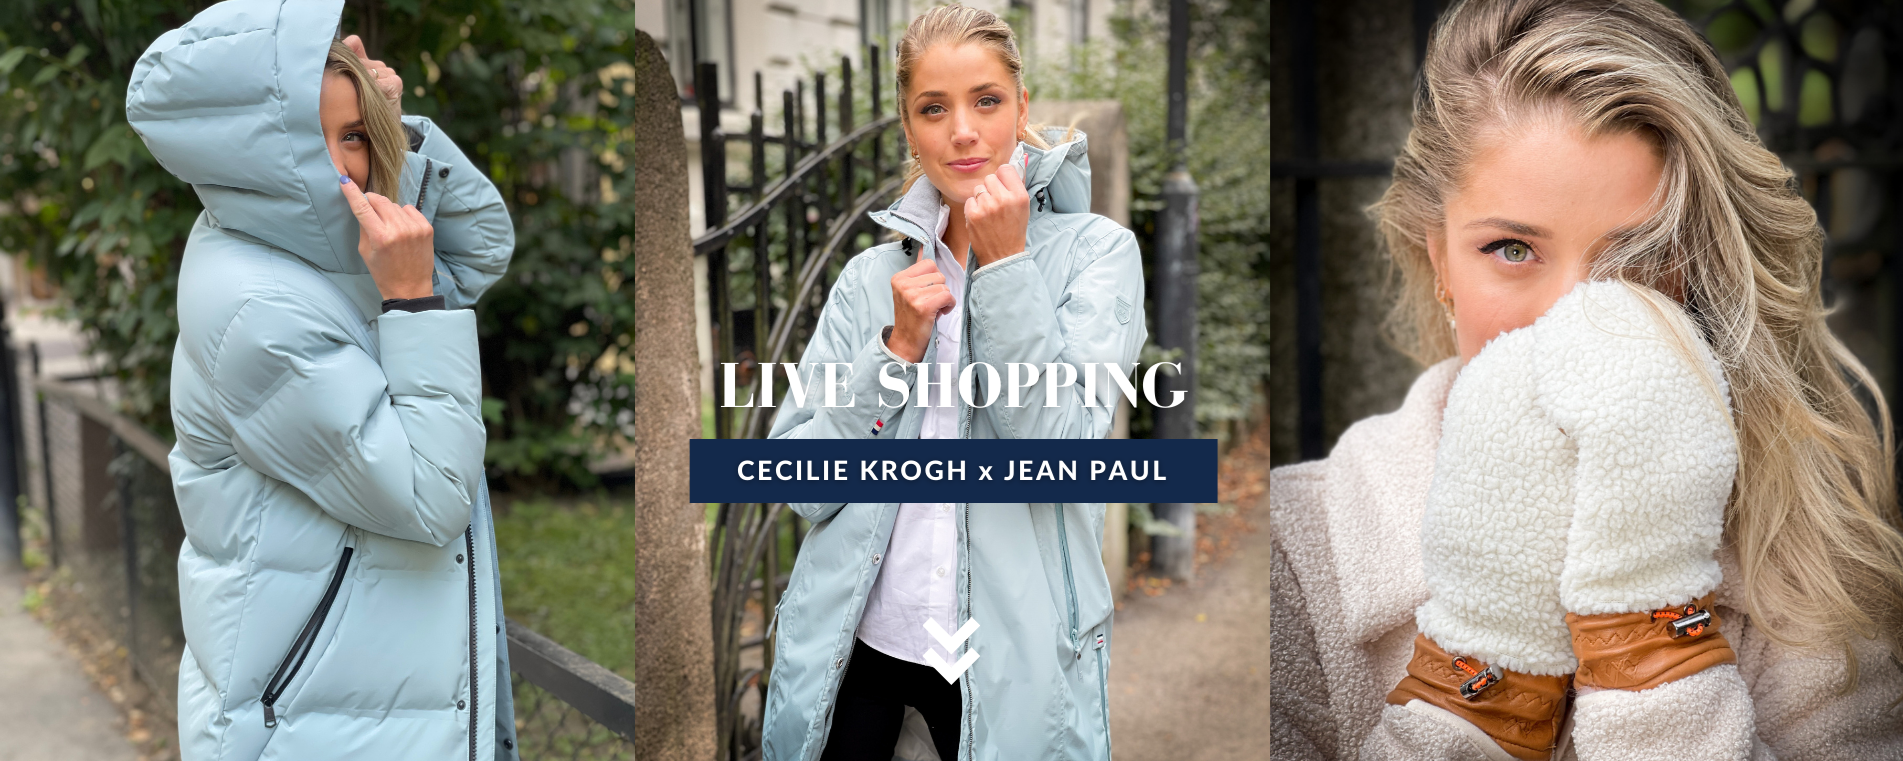 Live Shopping Cecilie Krogh x Jean Paul